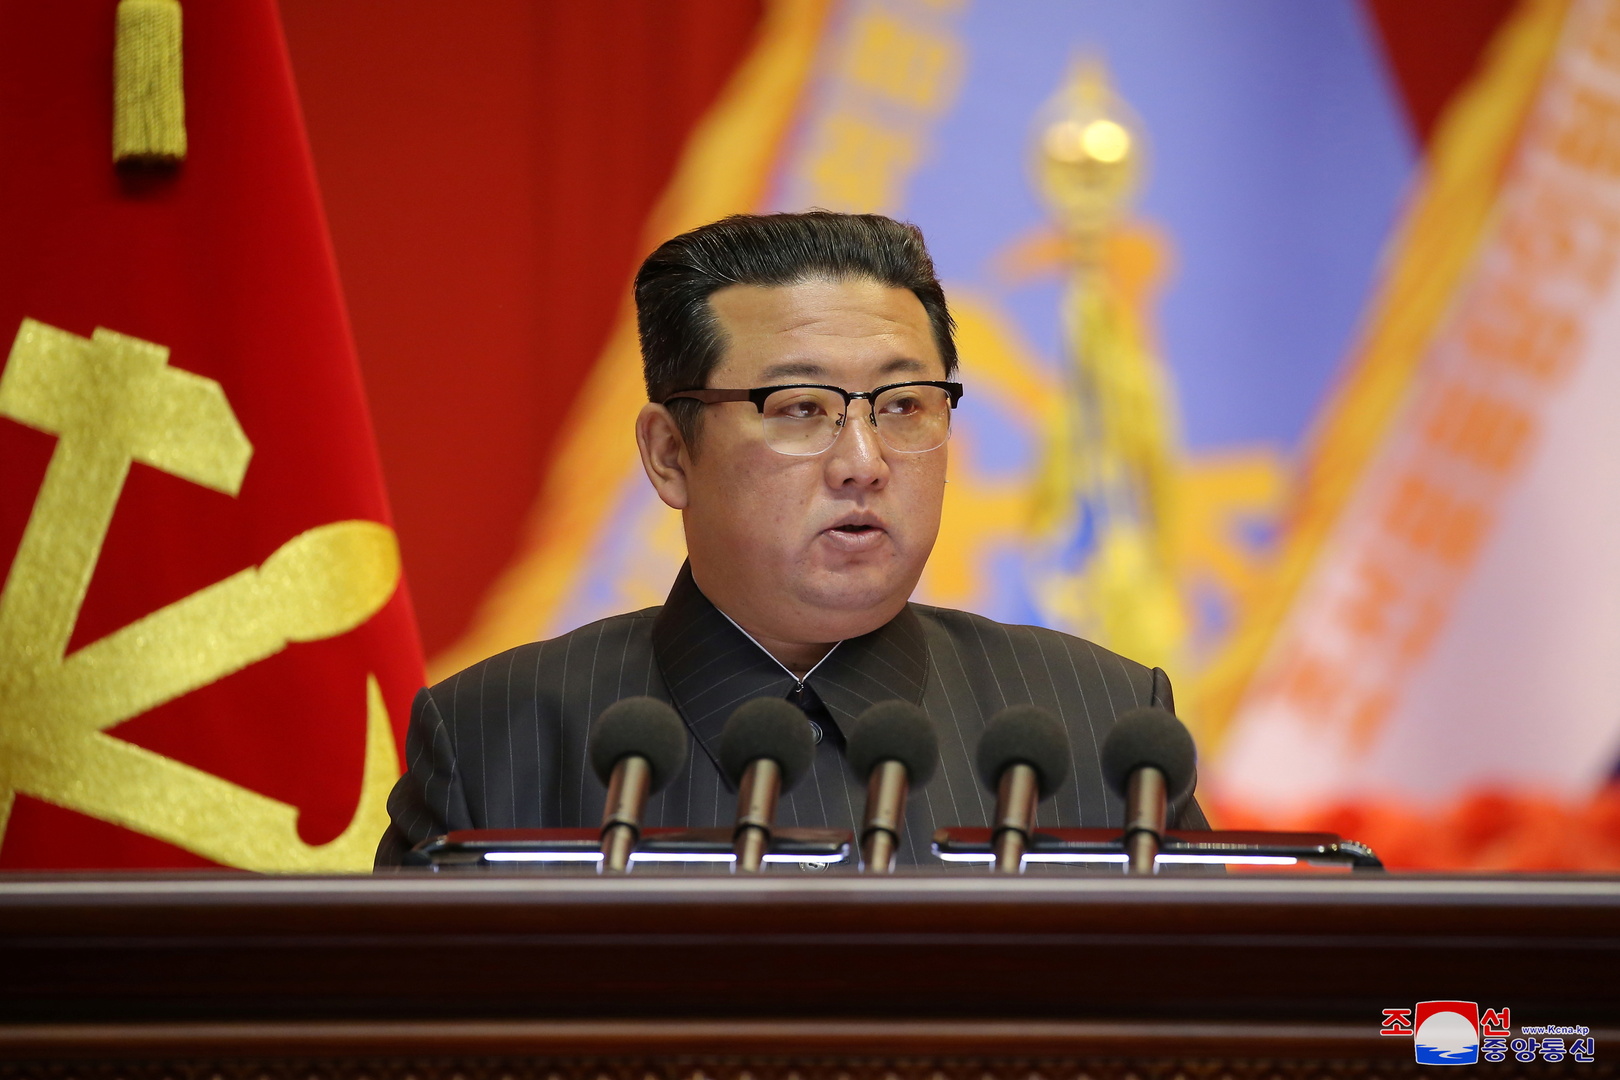 زعيم كوريا الشمالية يفرض 11 يوما من الحداد